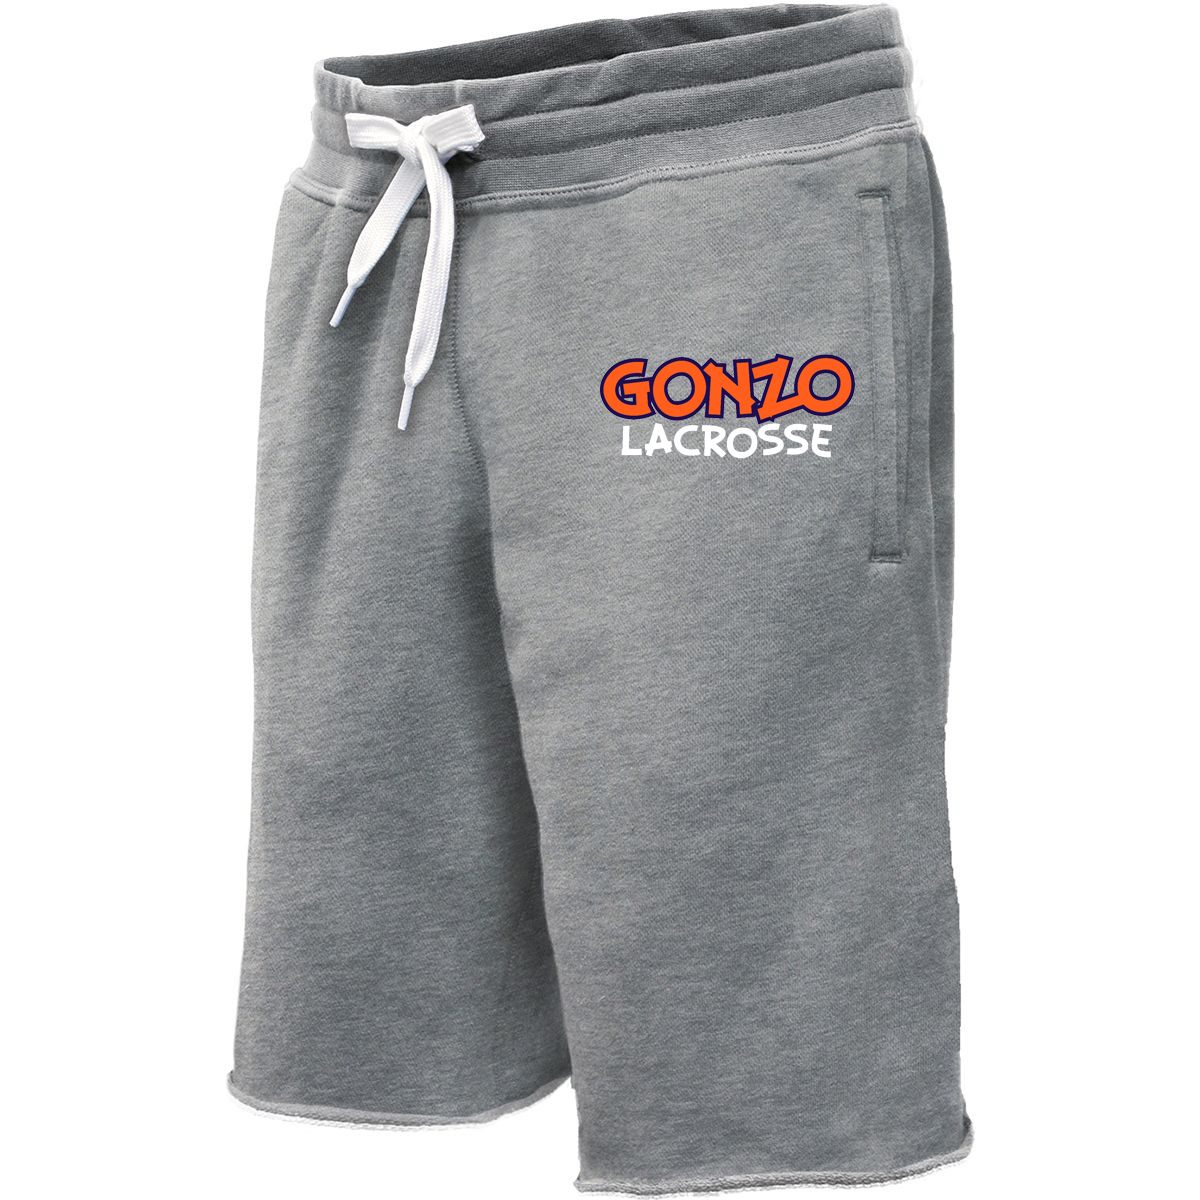 Gonzo Lacrosse Sweatshort